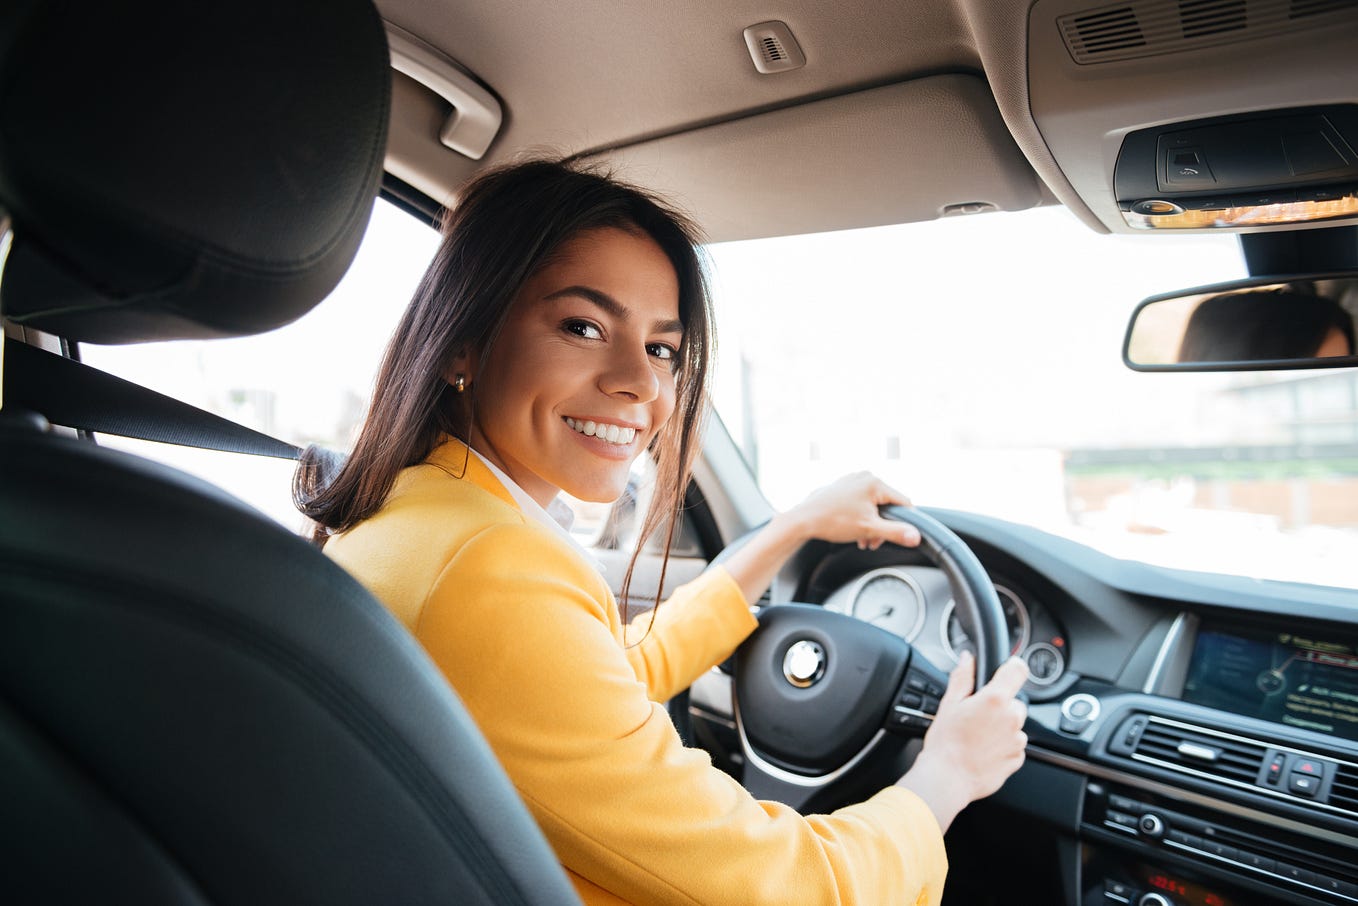 Mulheres são mais prudentes ao volante, porém ainda ocupam menos espaço no trânsito